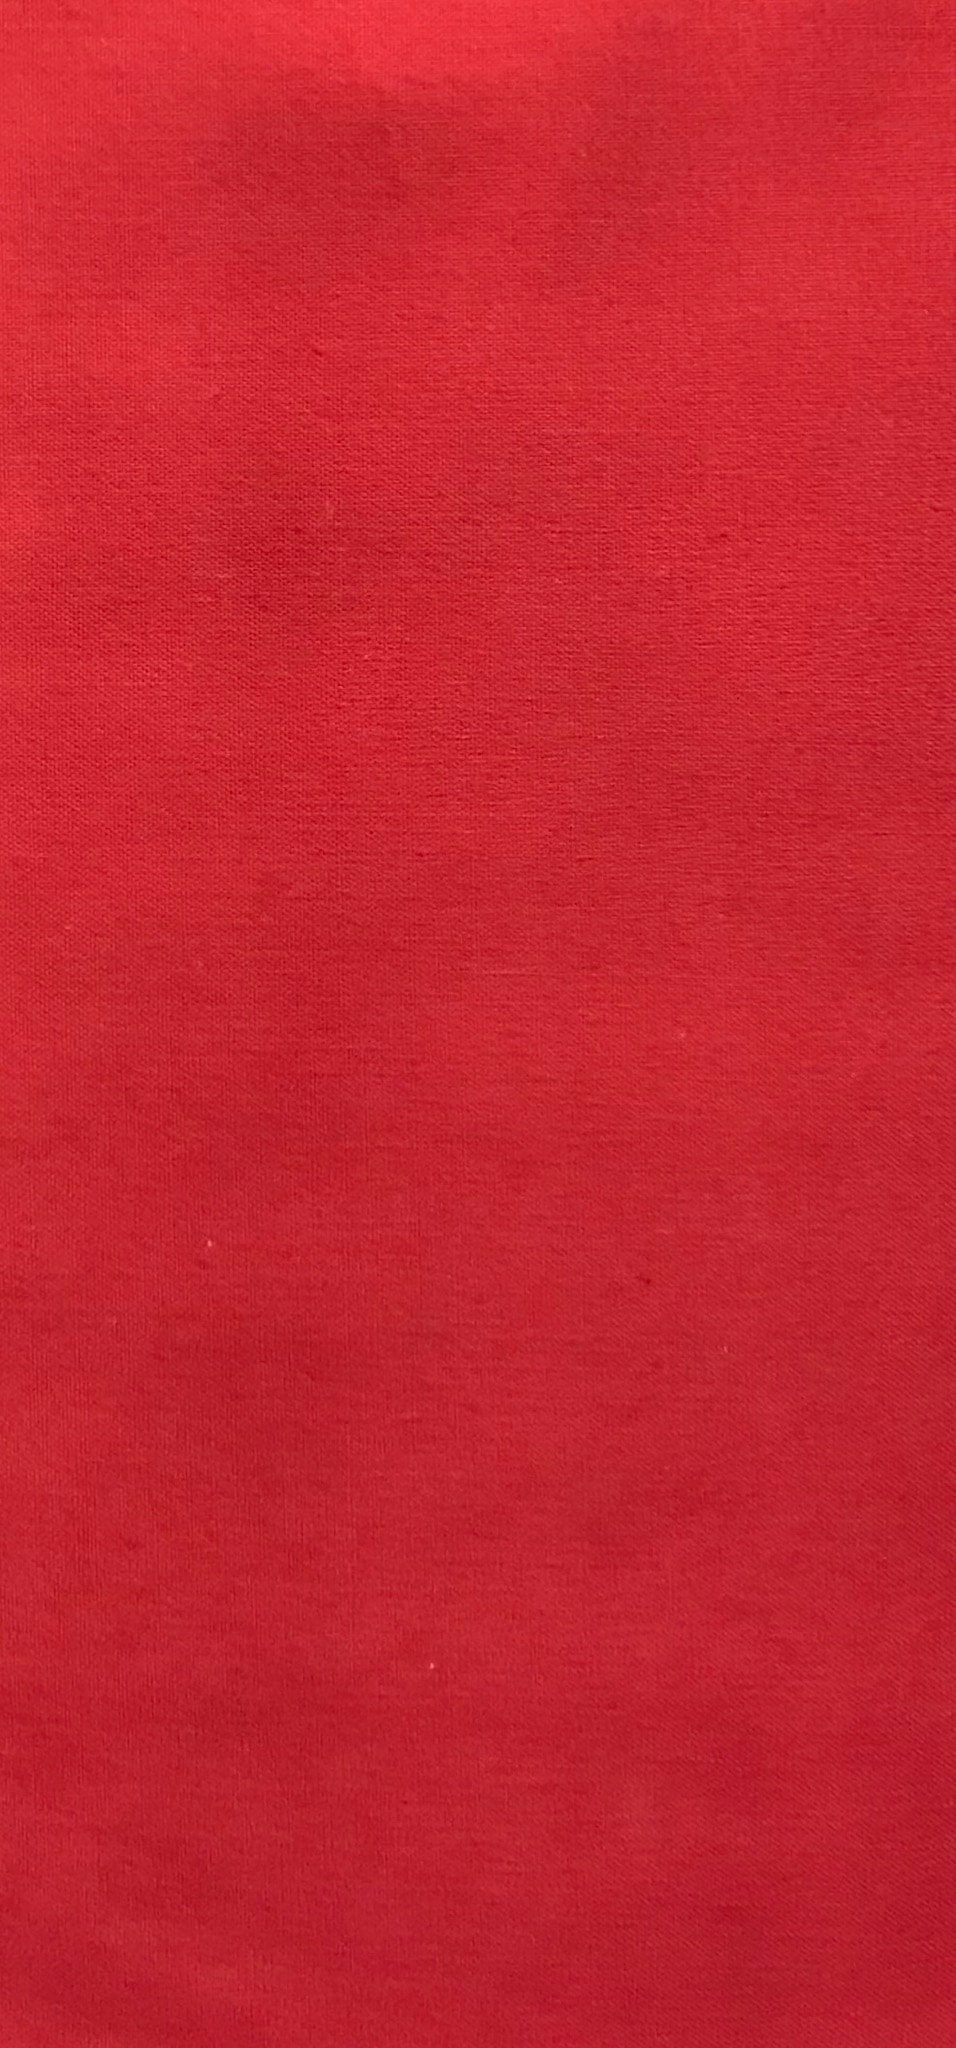 Colorworks Premium - Dark Red (Marrakech)